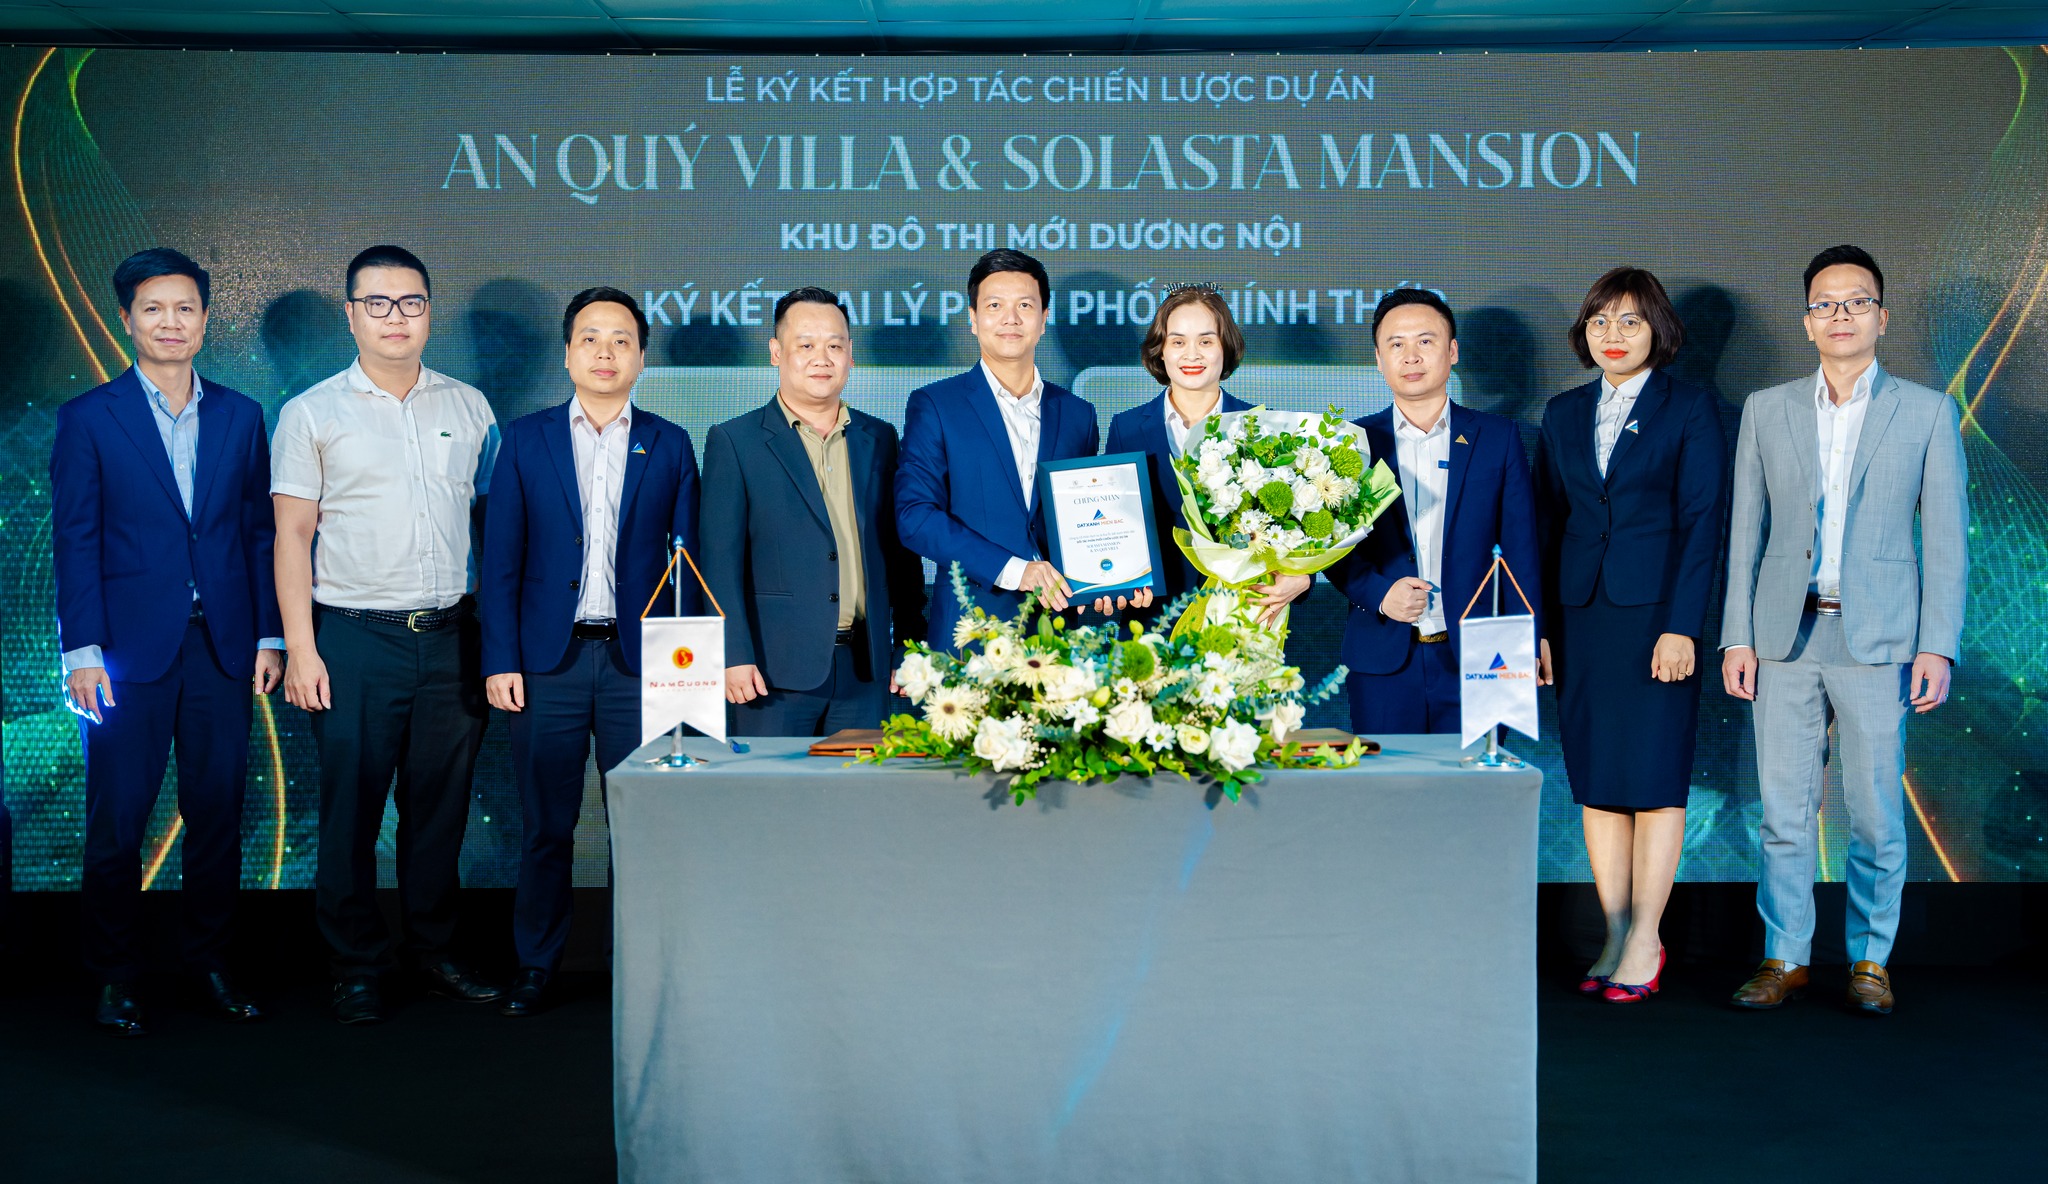 Đất Xanh Miền Bắc phân phối chính thức An Quý Villa và Solasta Mansion tại KĐT mới Dương Nội